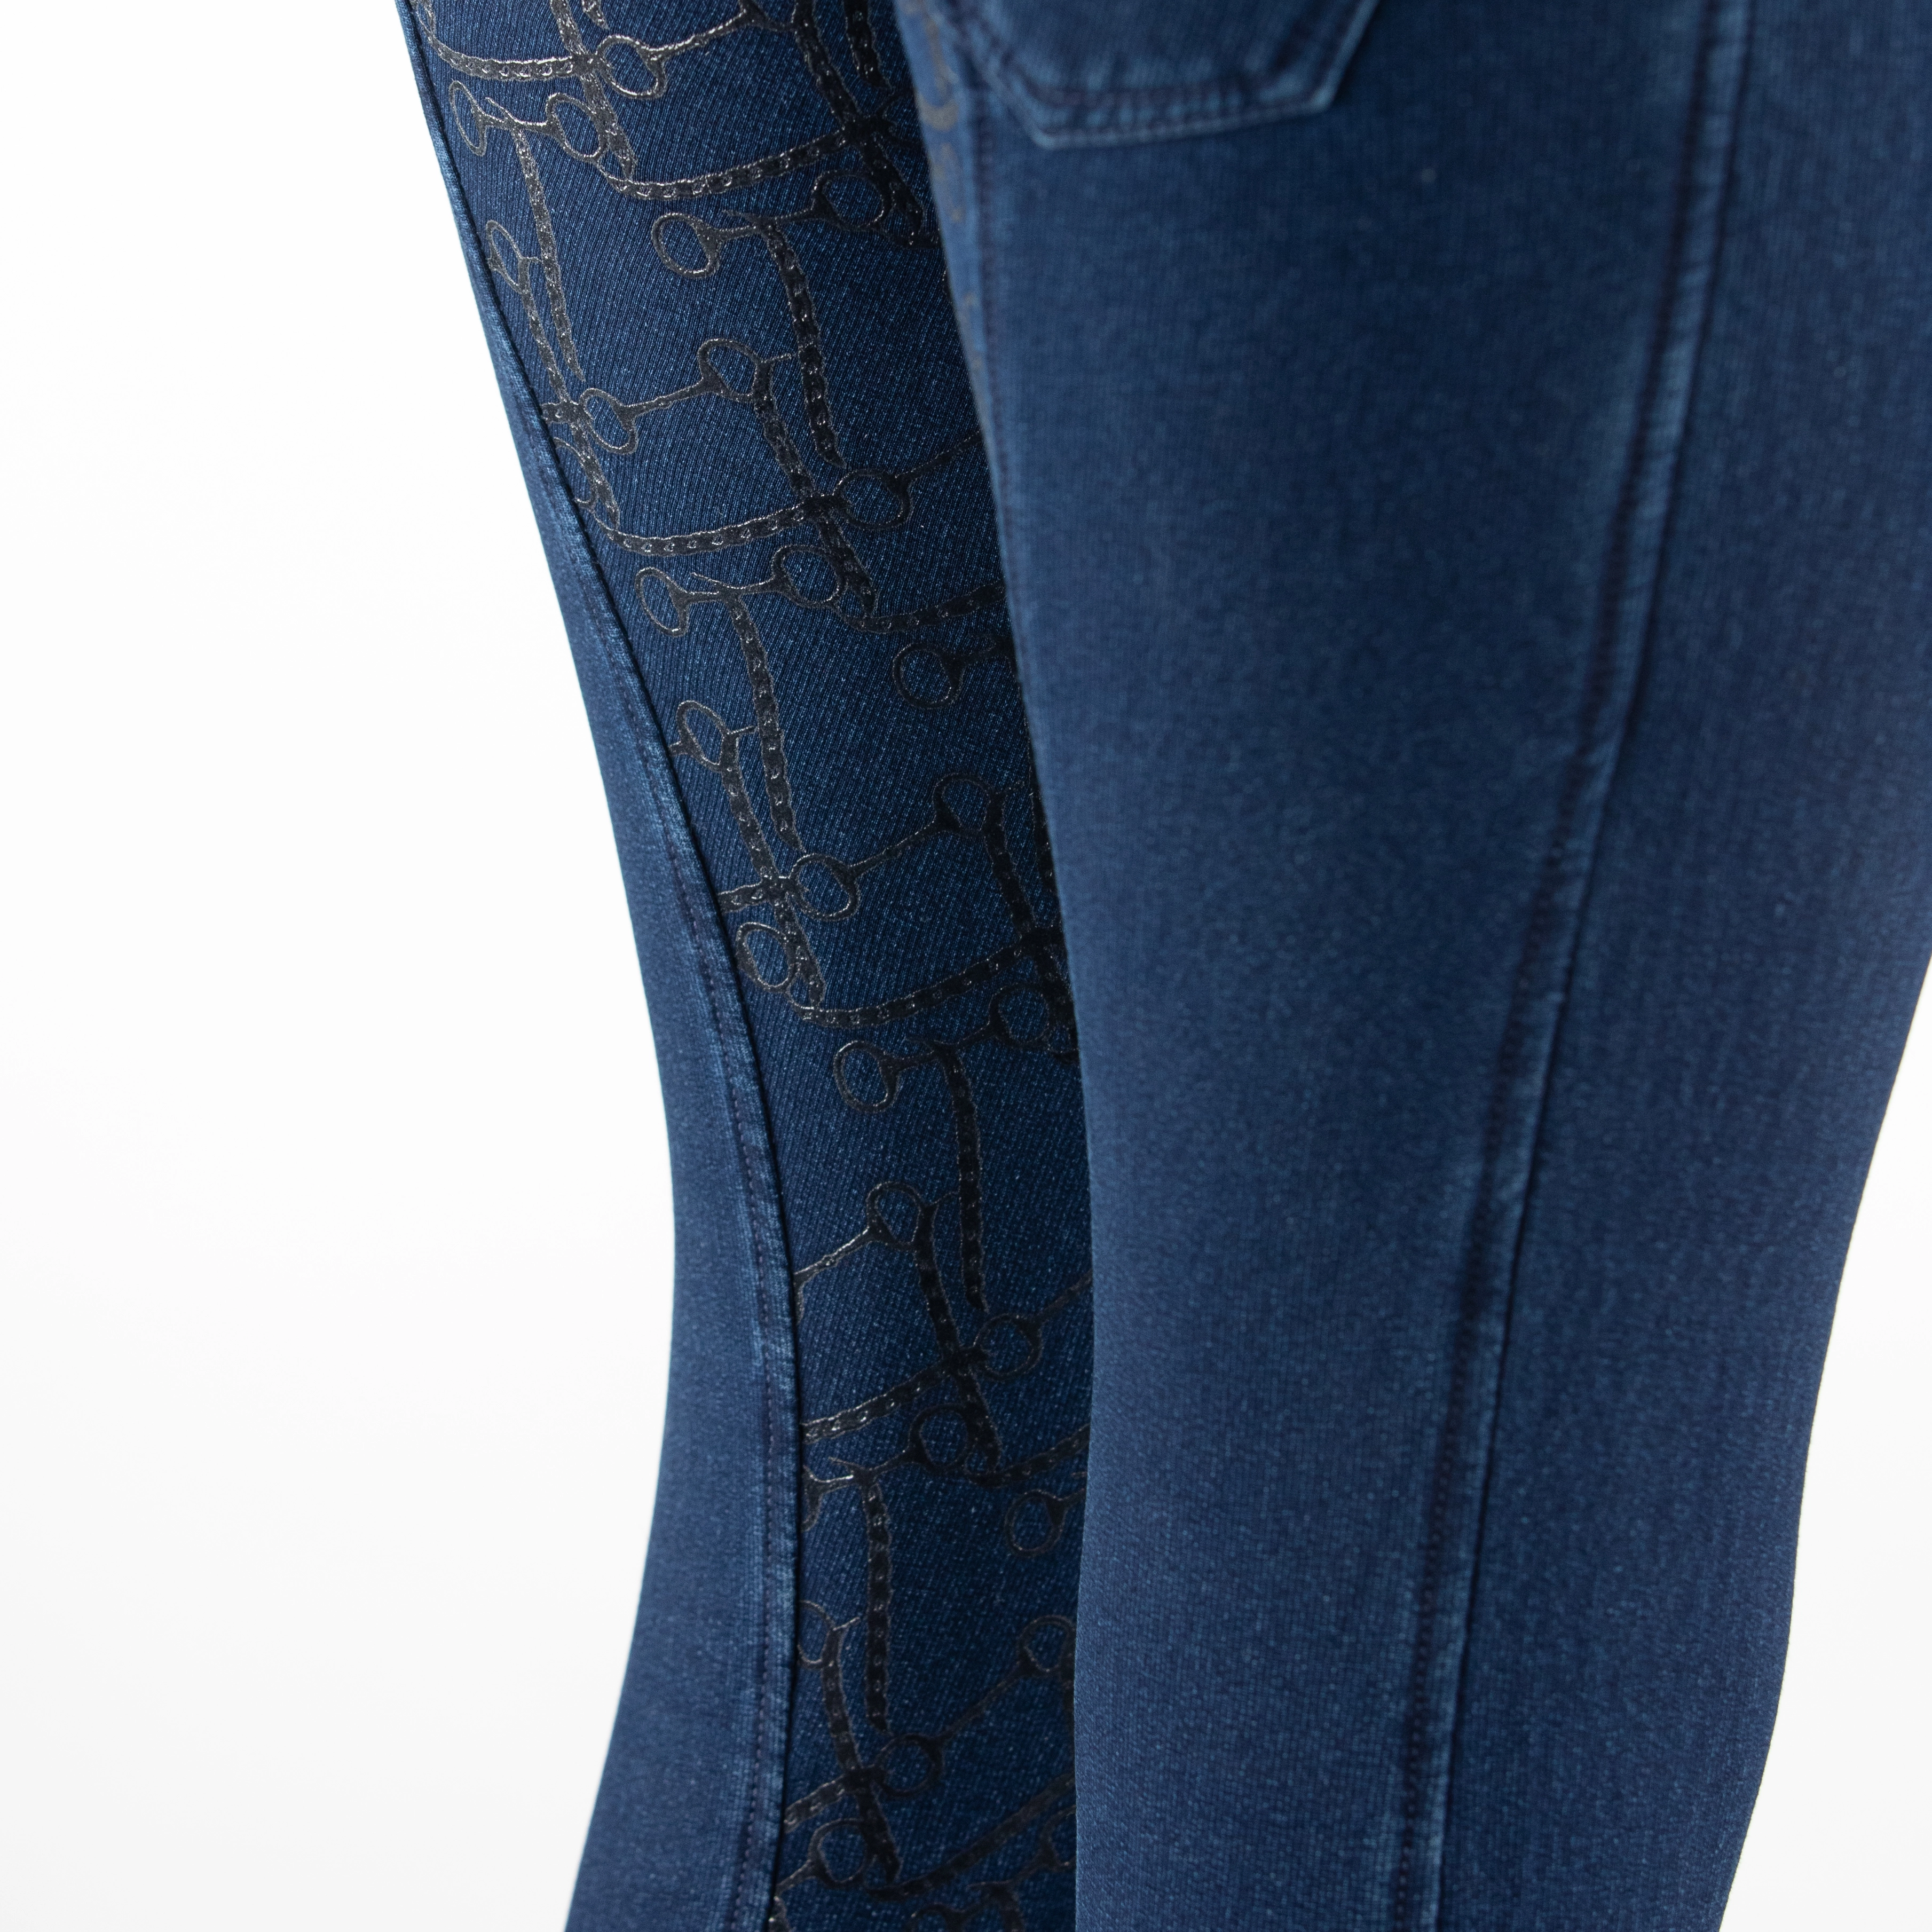 Bryczesy Horze Kasey jeans z polarową podszewką lej silikonowy Edycja Limitowana